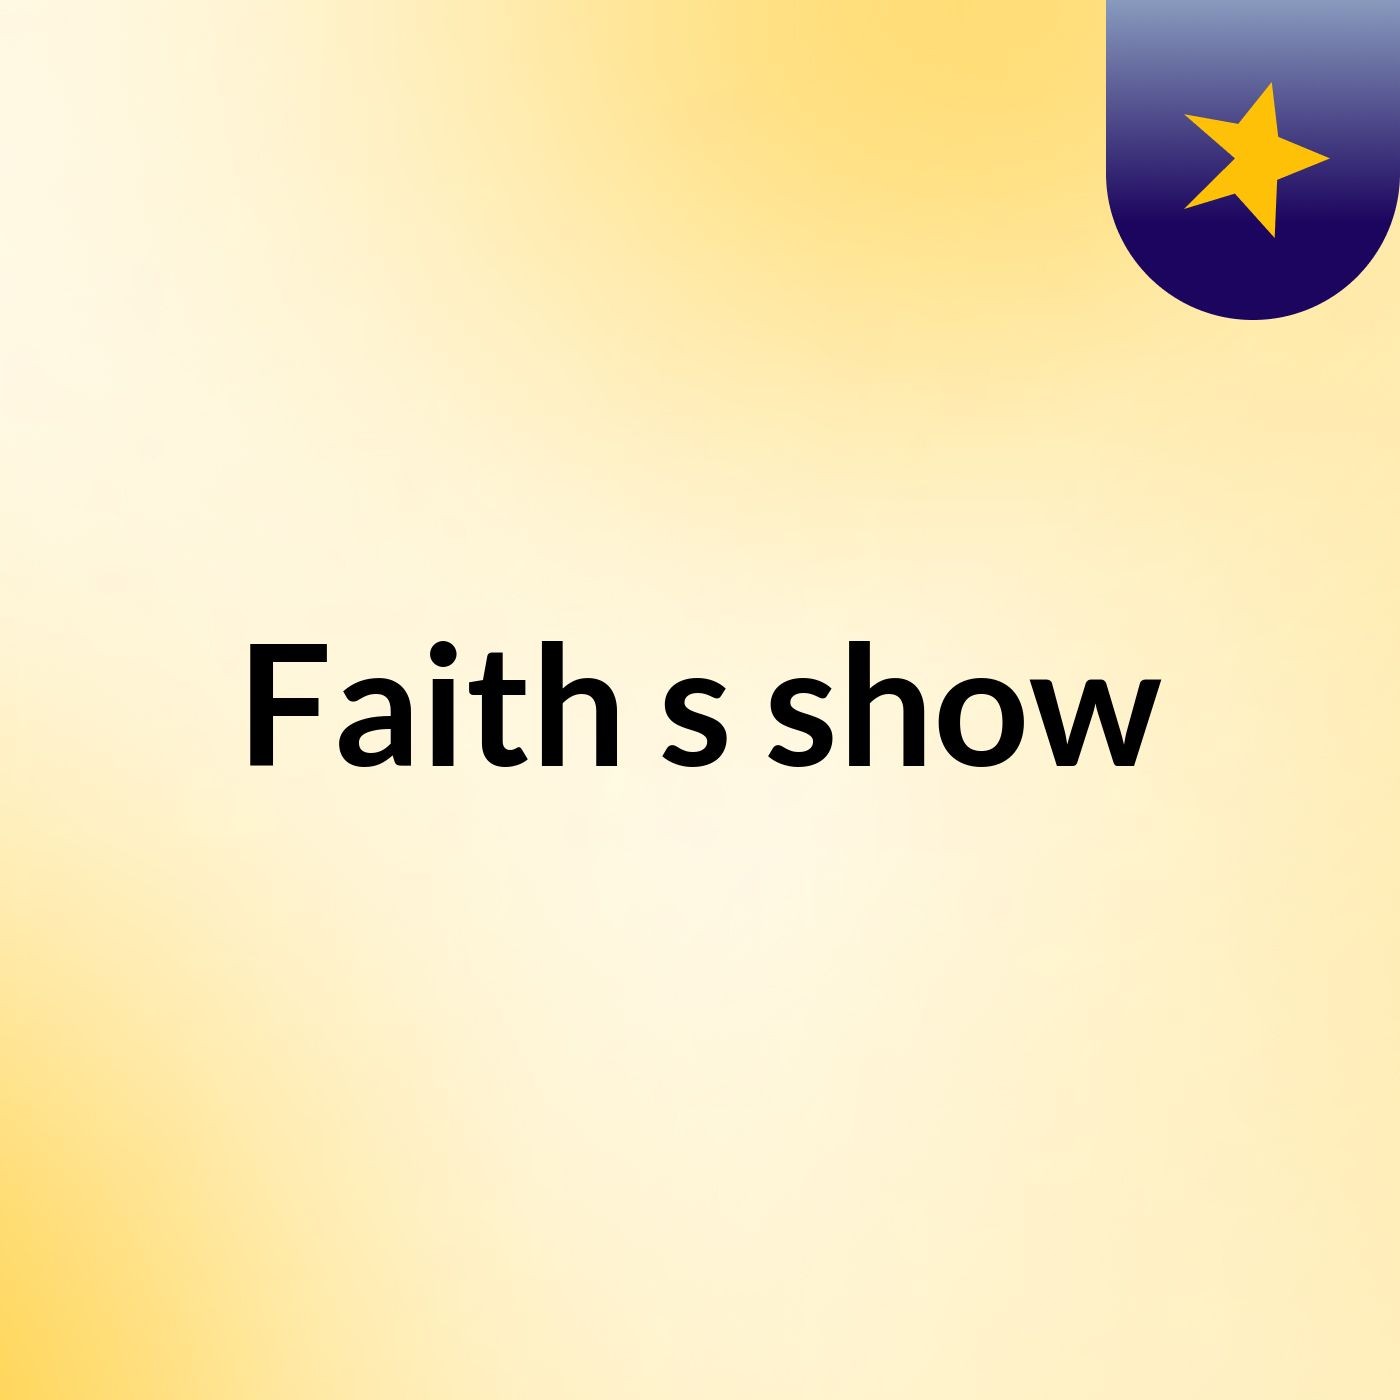 Faith's show